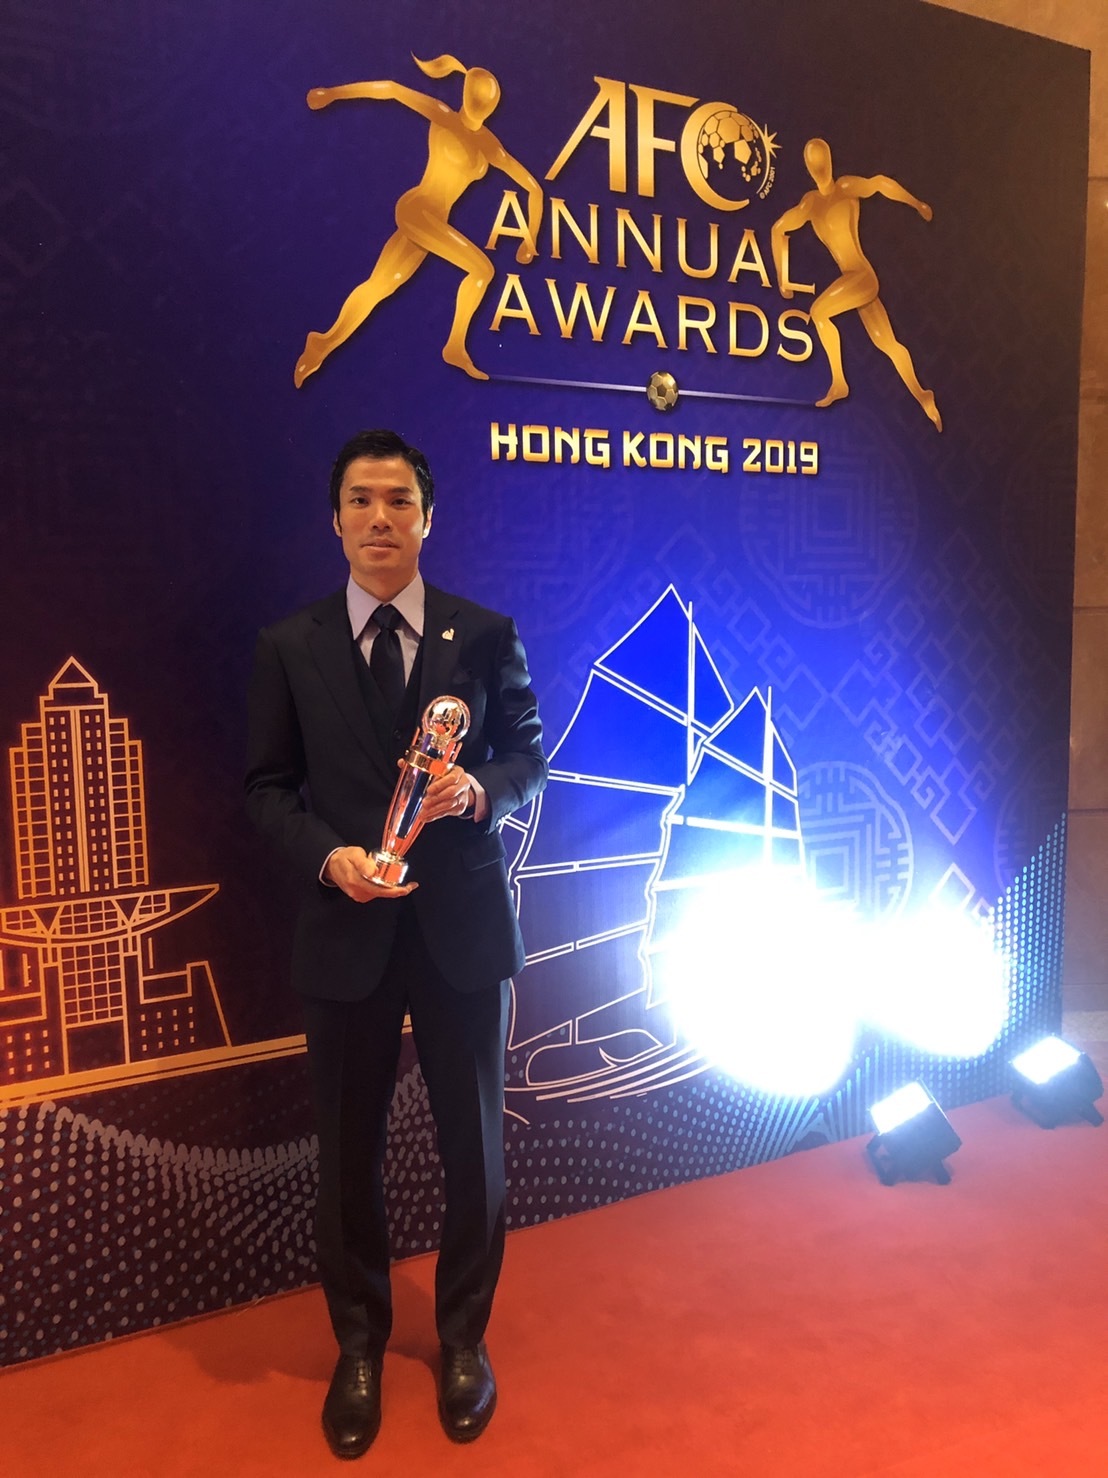 AFCの授賞式で年間最優秀フットサル選手賞に輝いた吉川智貴選手